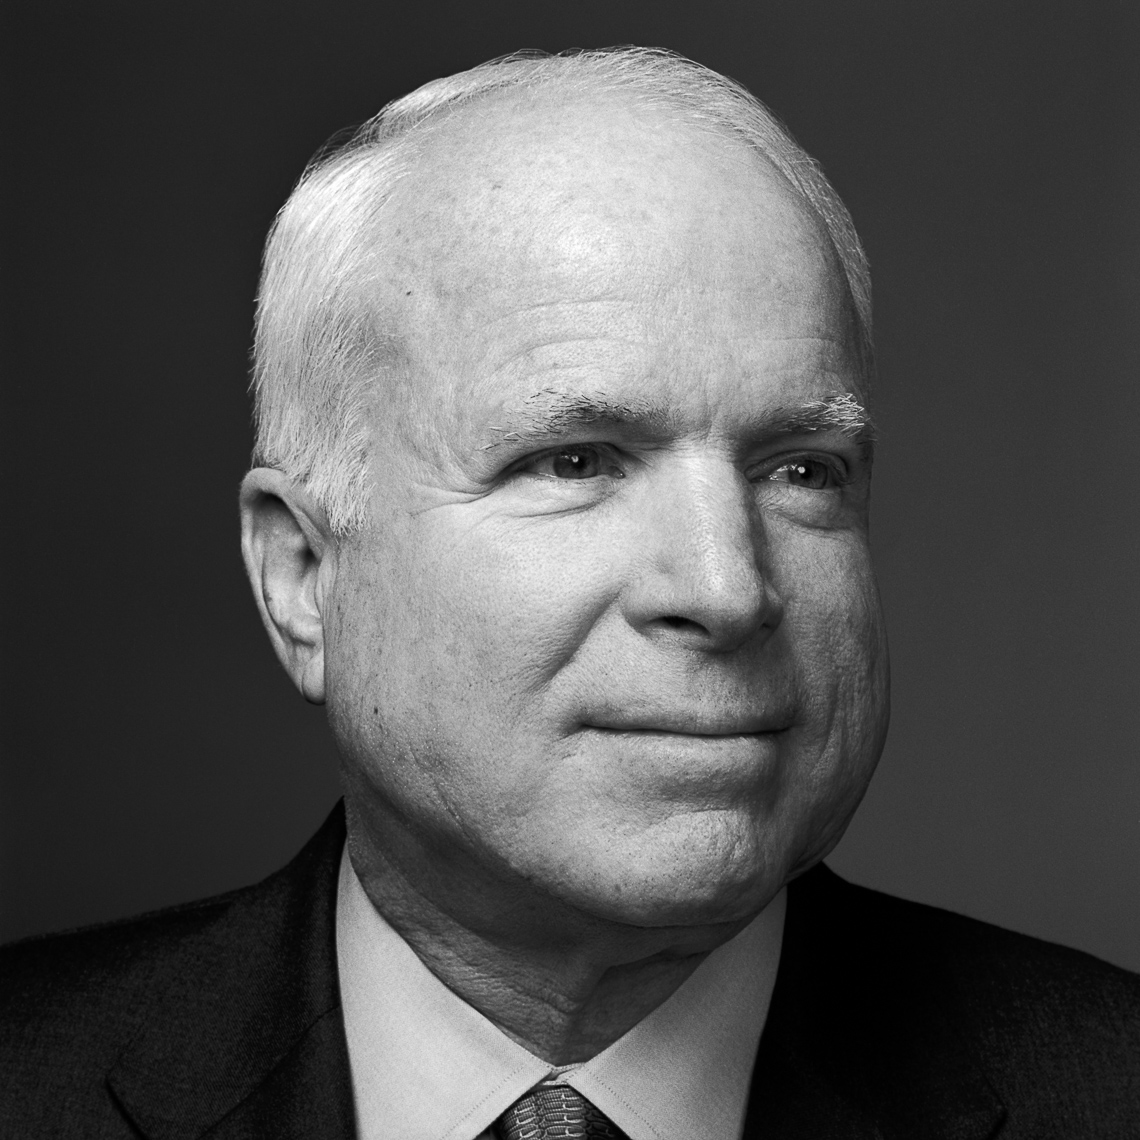 John_McCain_BW2a_2003